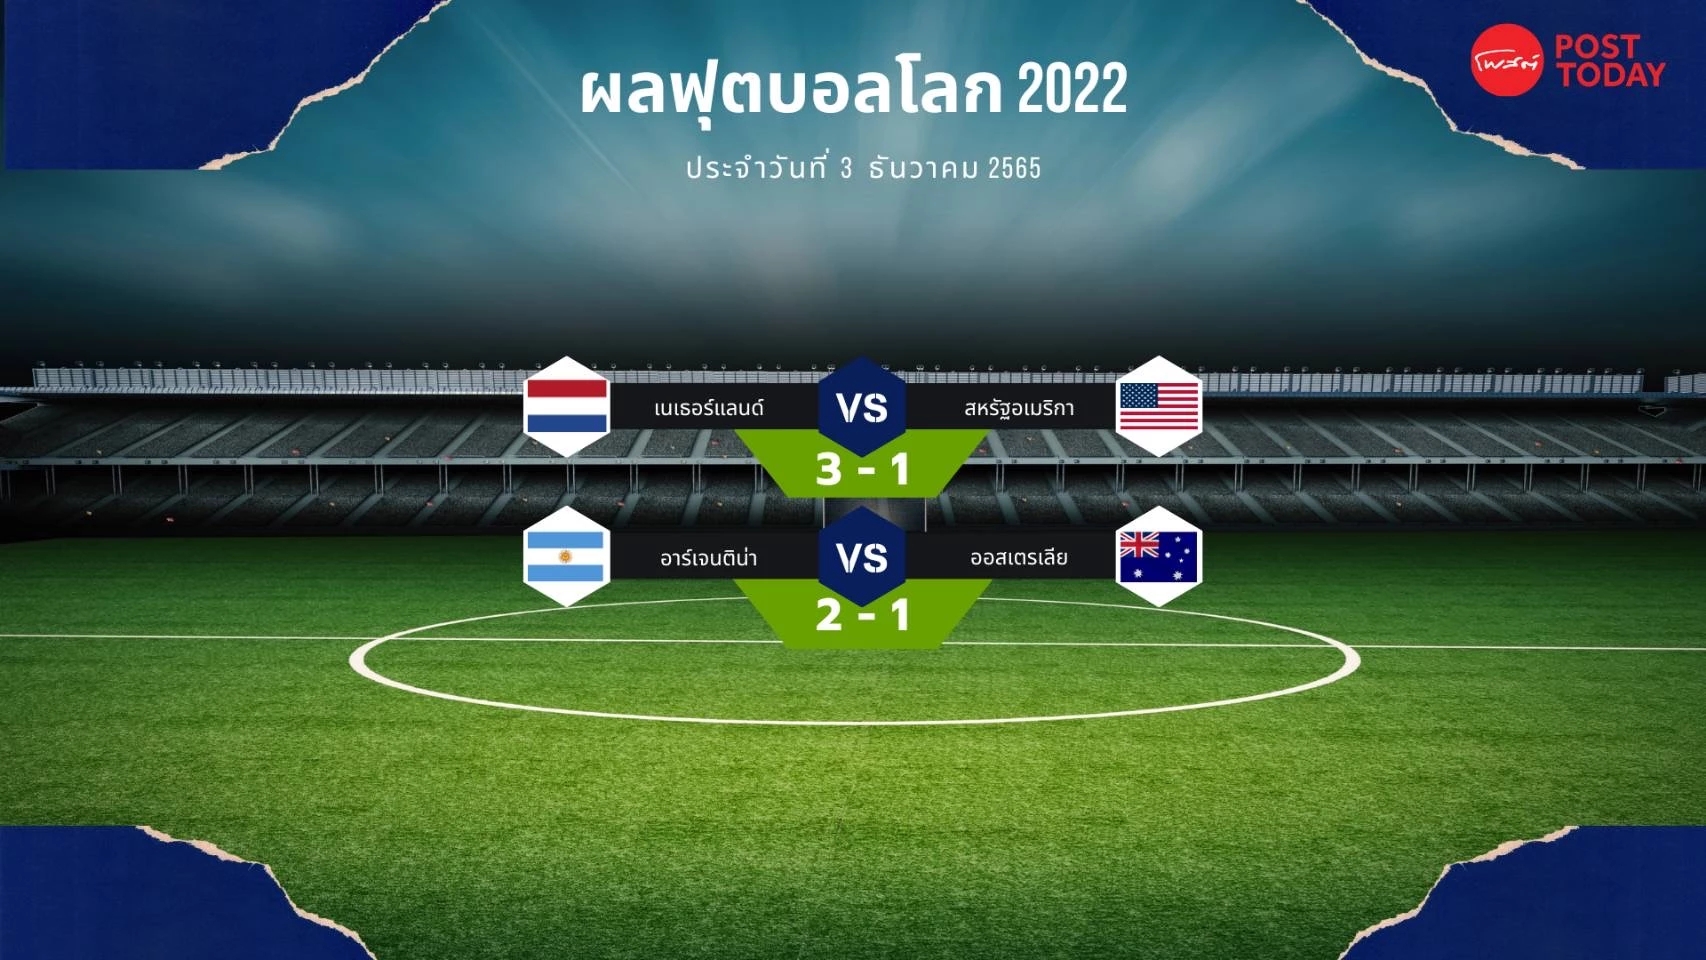 ฟุตบอลโลก 2022 3 ธันวาคม 2565 เนเธอร์แลนด์ ลิ่วชน อาร์เจนตินา รอบ 8 ทีม